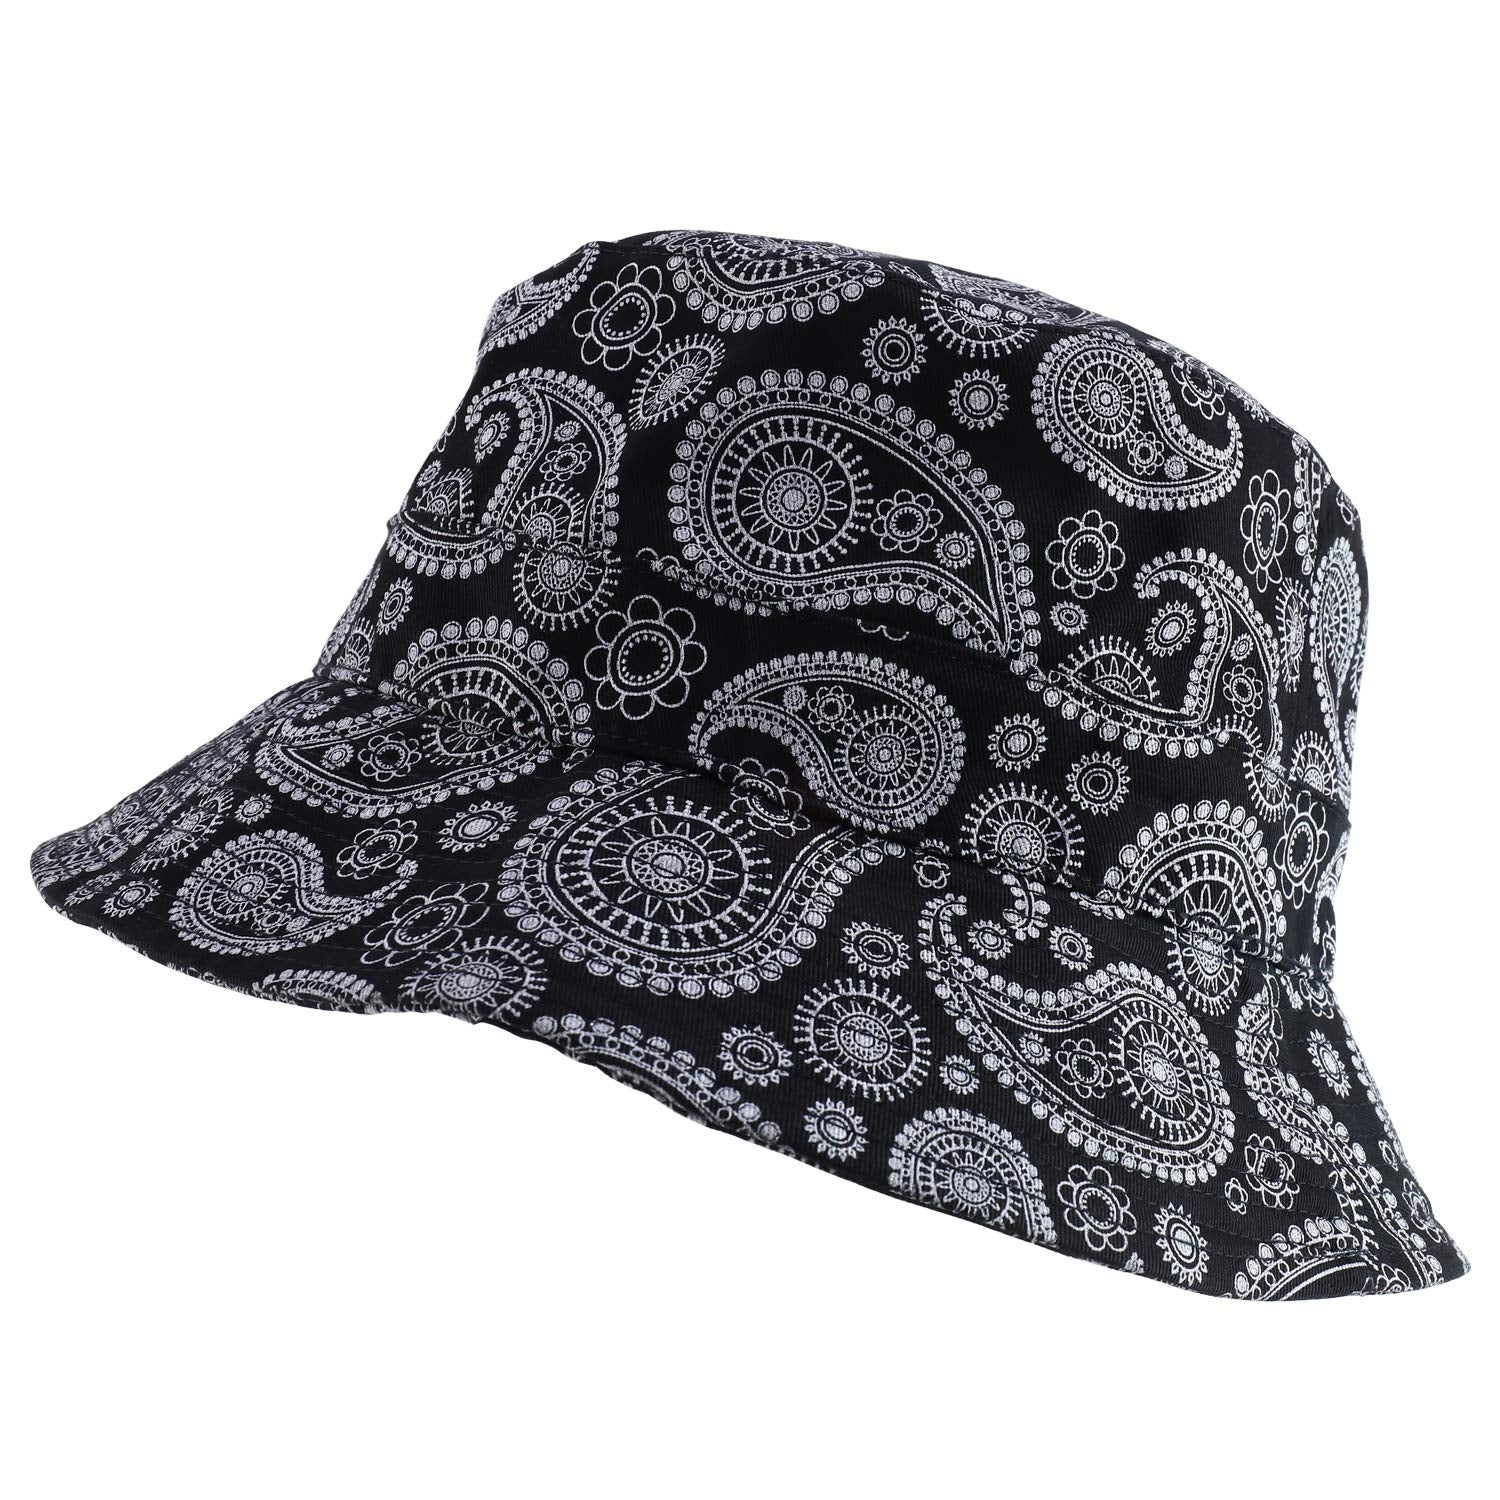 DECKY Paisley Bandana Print 100% Cotton Bucket Hat - Black - L-XL